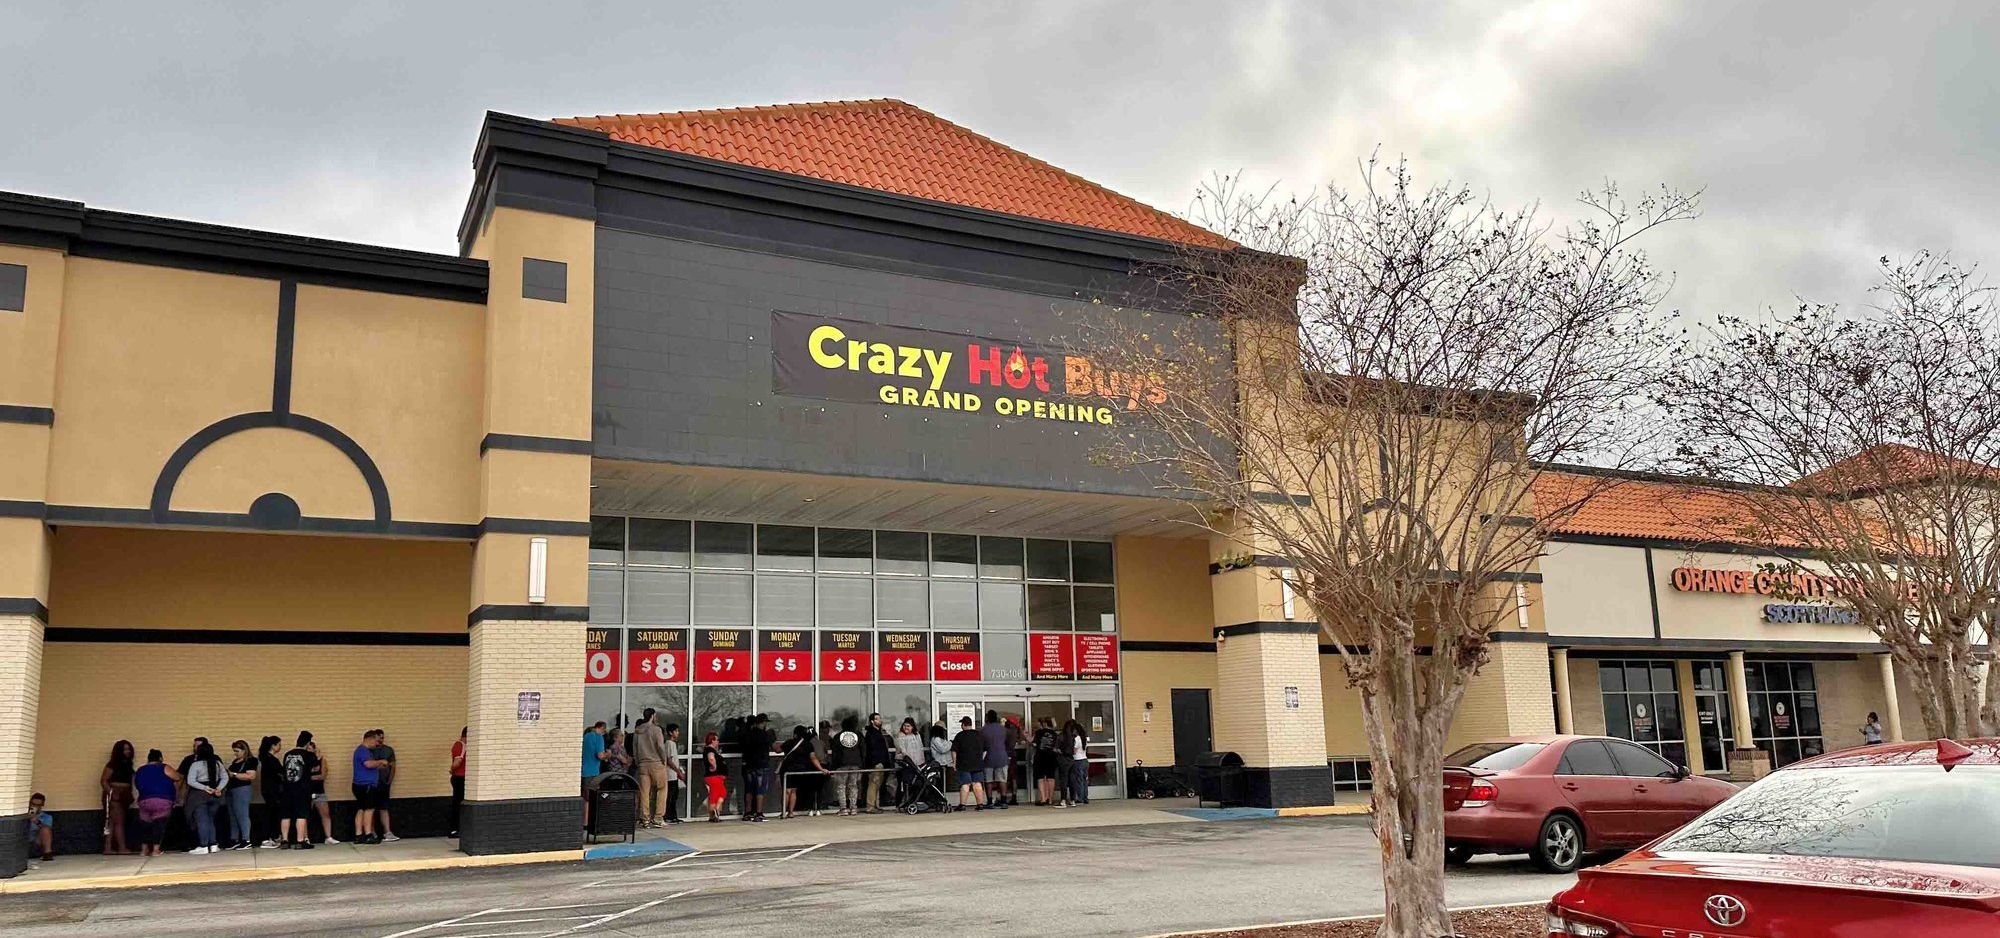 Crazy Hot Buys: La tienda en Florida con remates, ¿Se puede